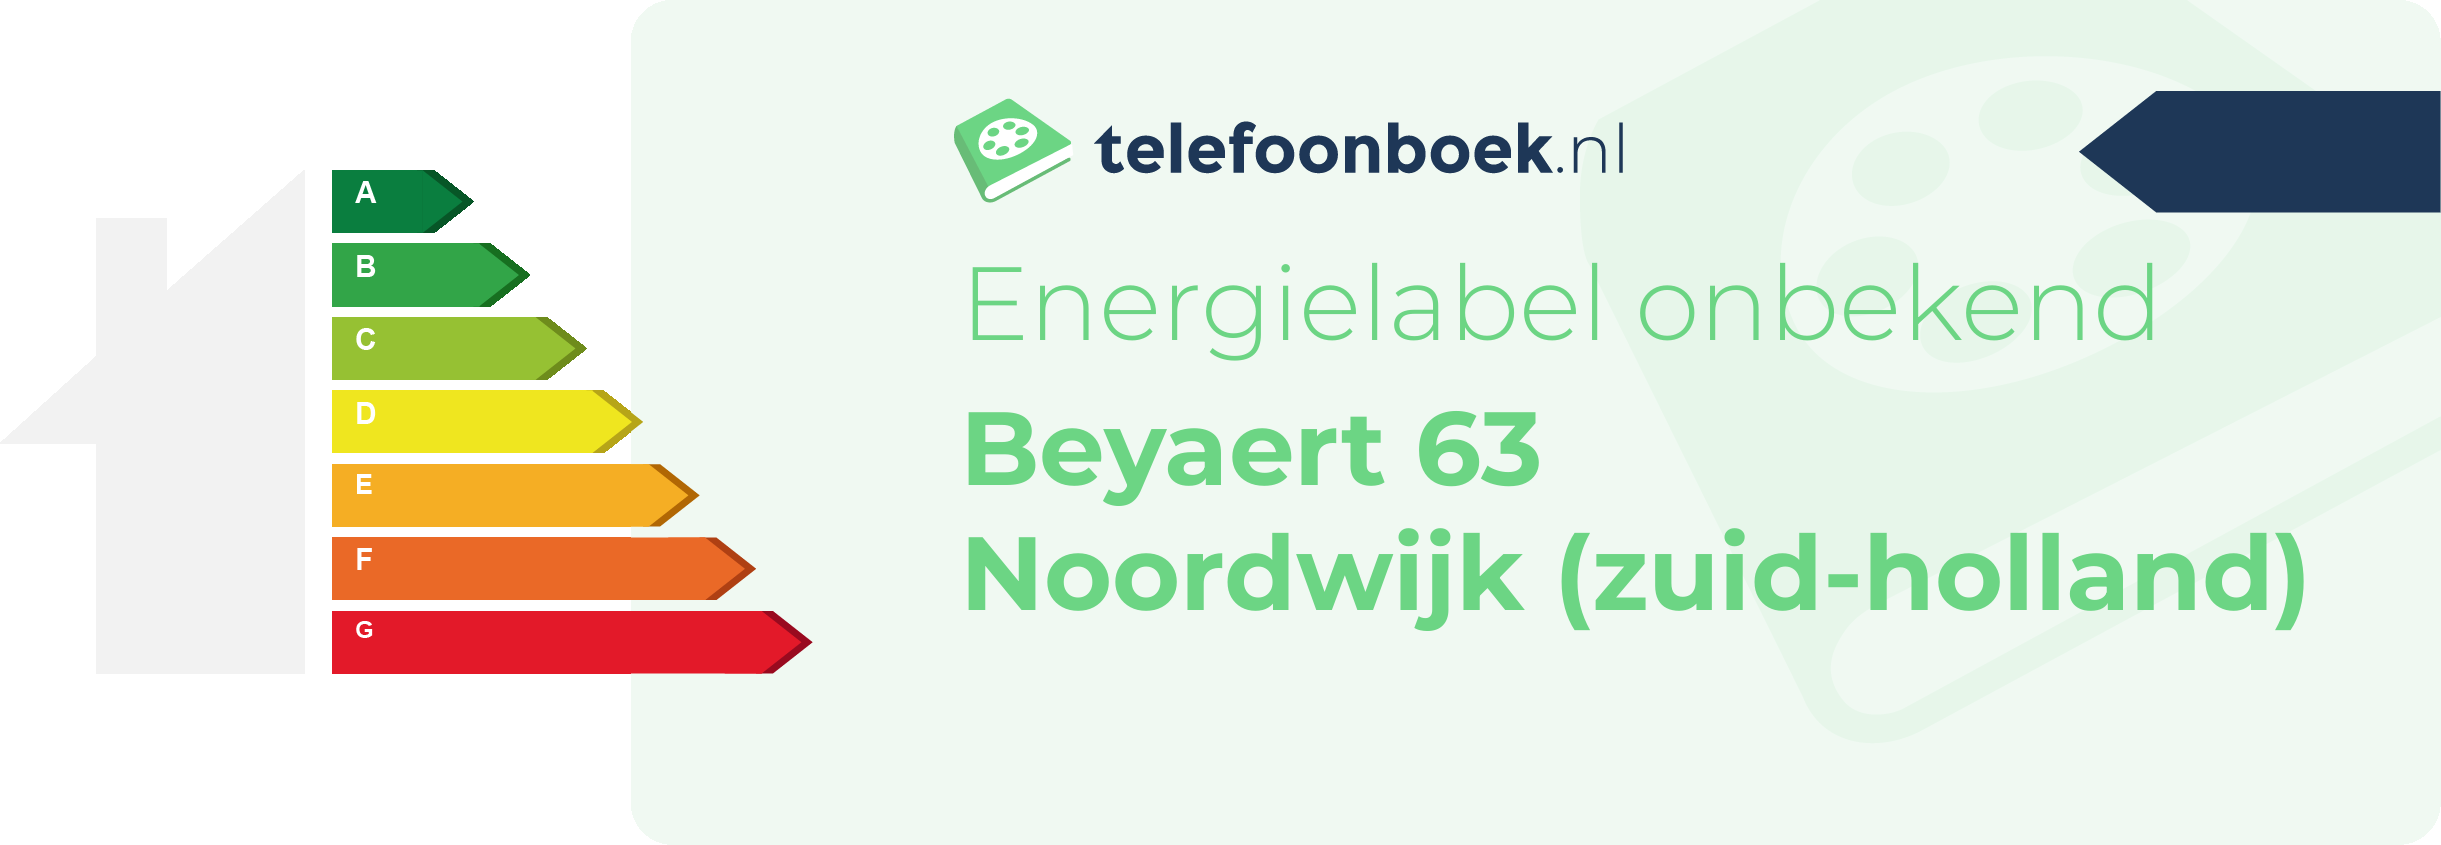 Energielabel Beyaert 63 Noordwijk (Zuid-Holland)